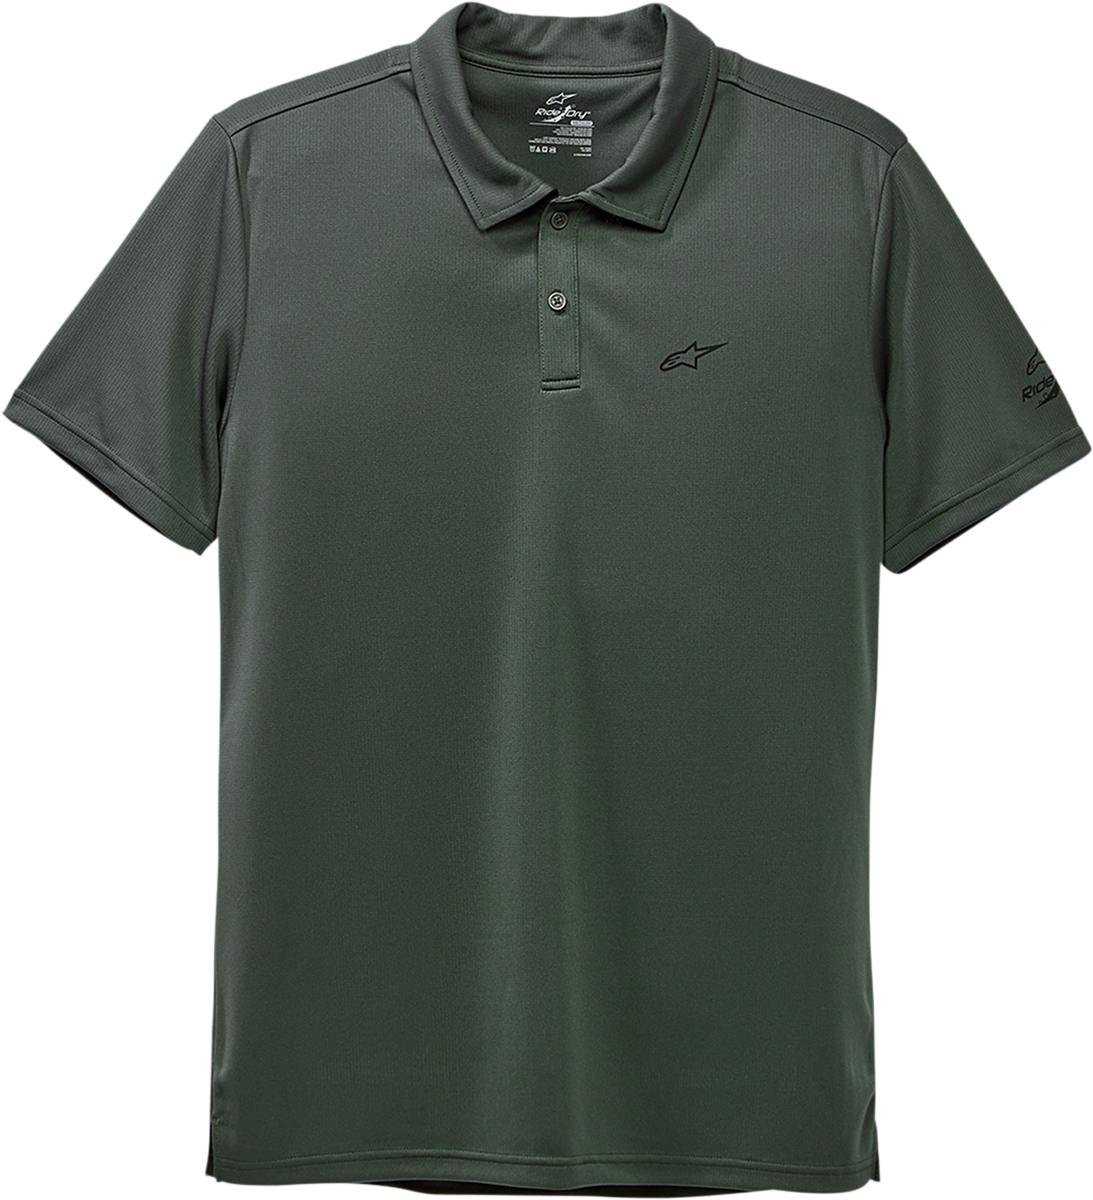 Scenario Performance Polo Shirt - Green - Medium